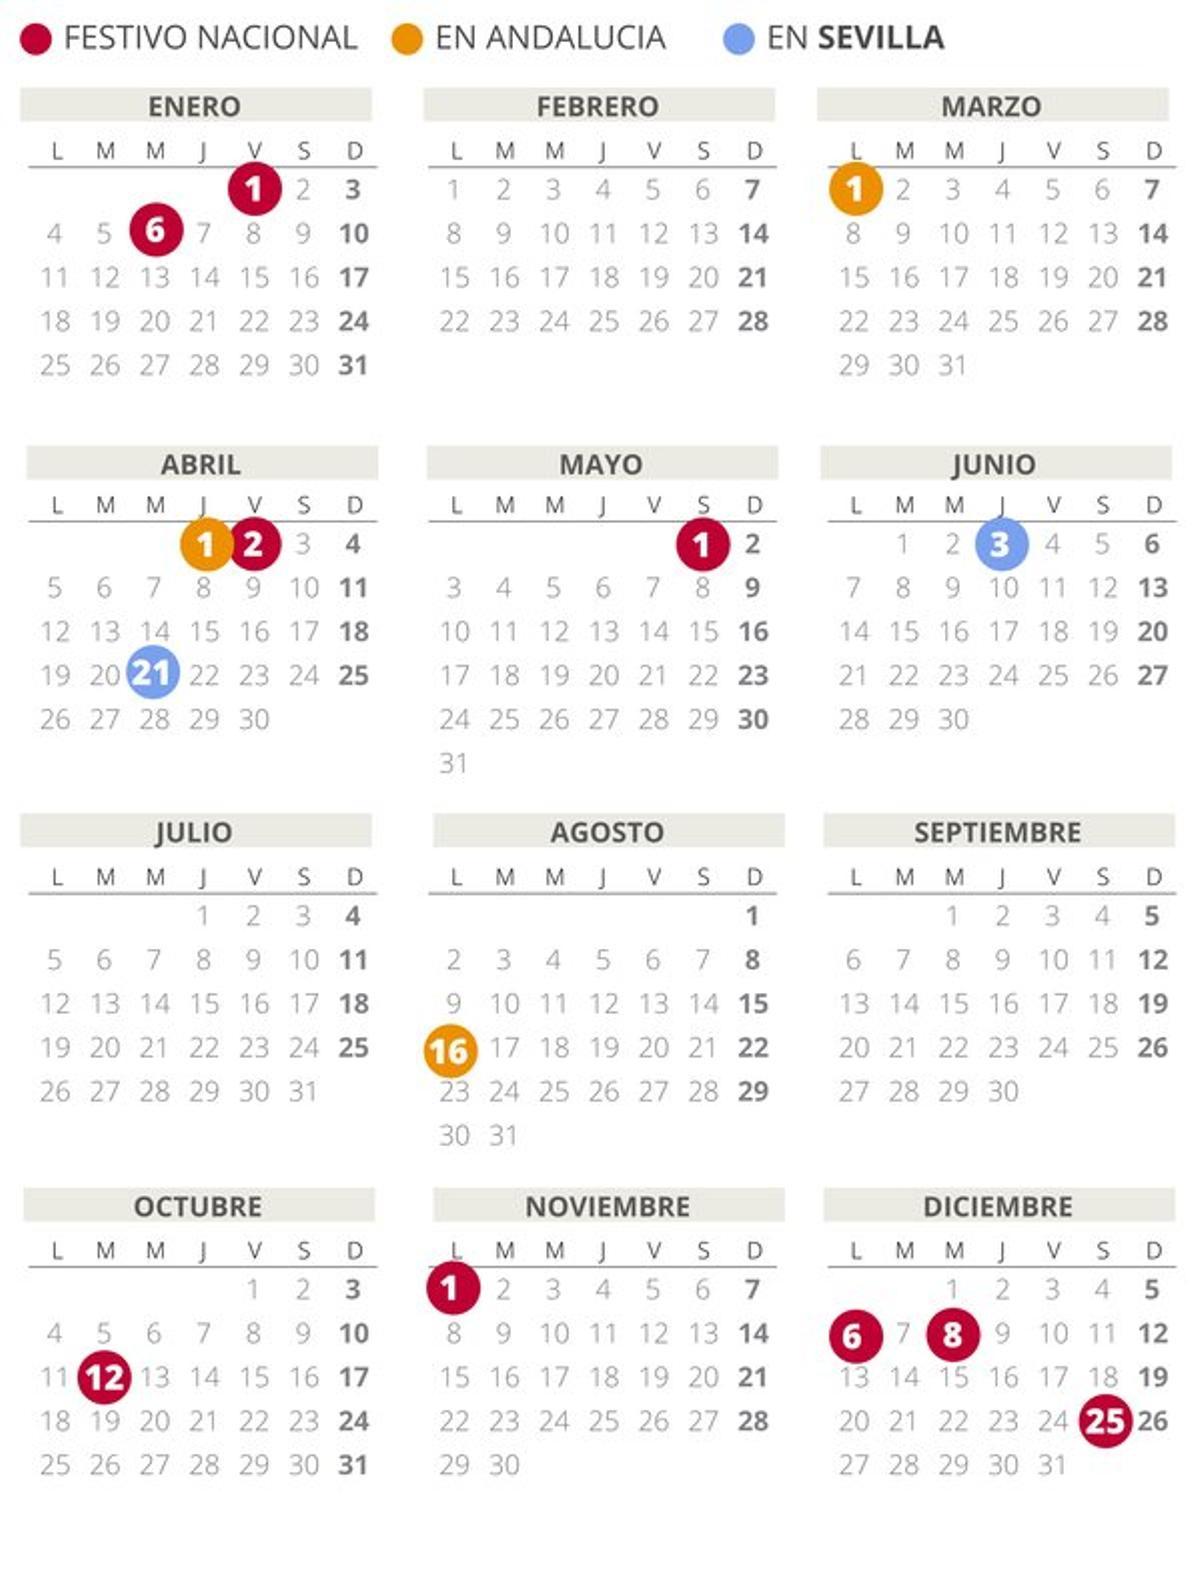 Calendario laboral de Sevilla del 2021.